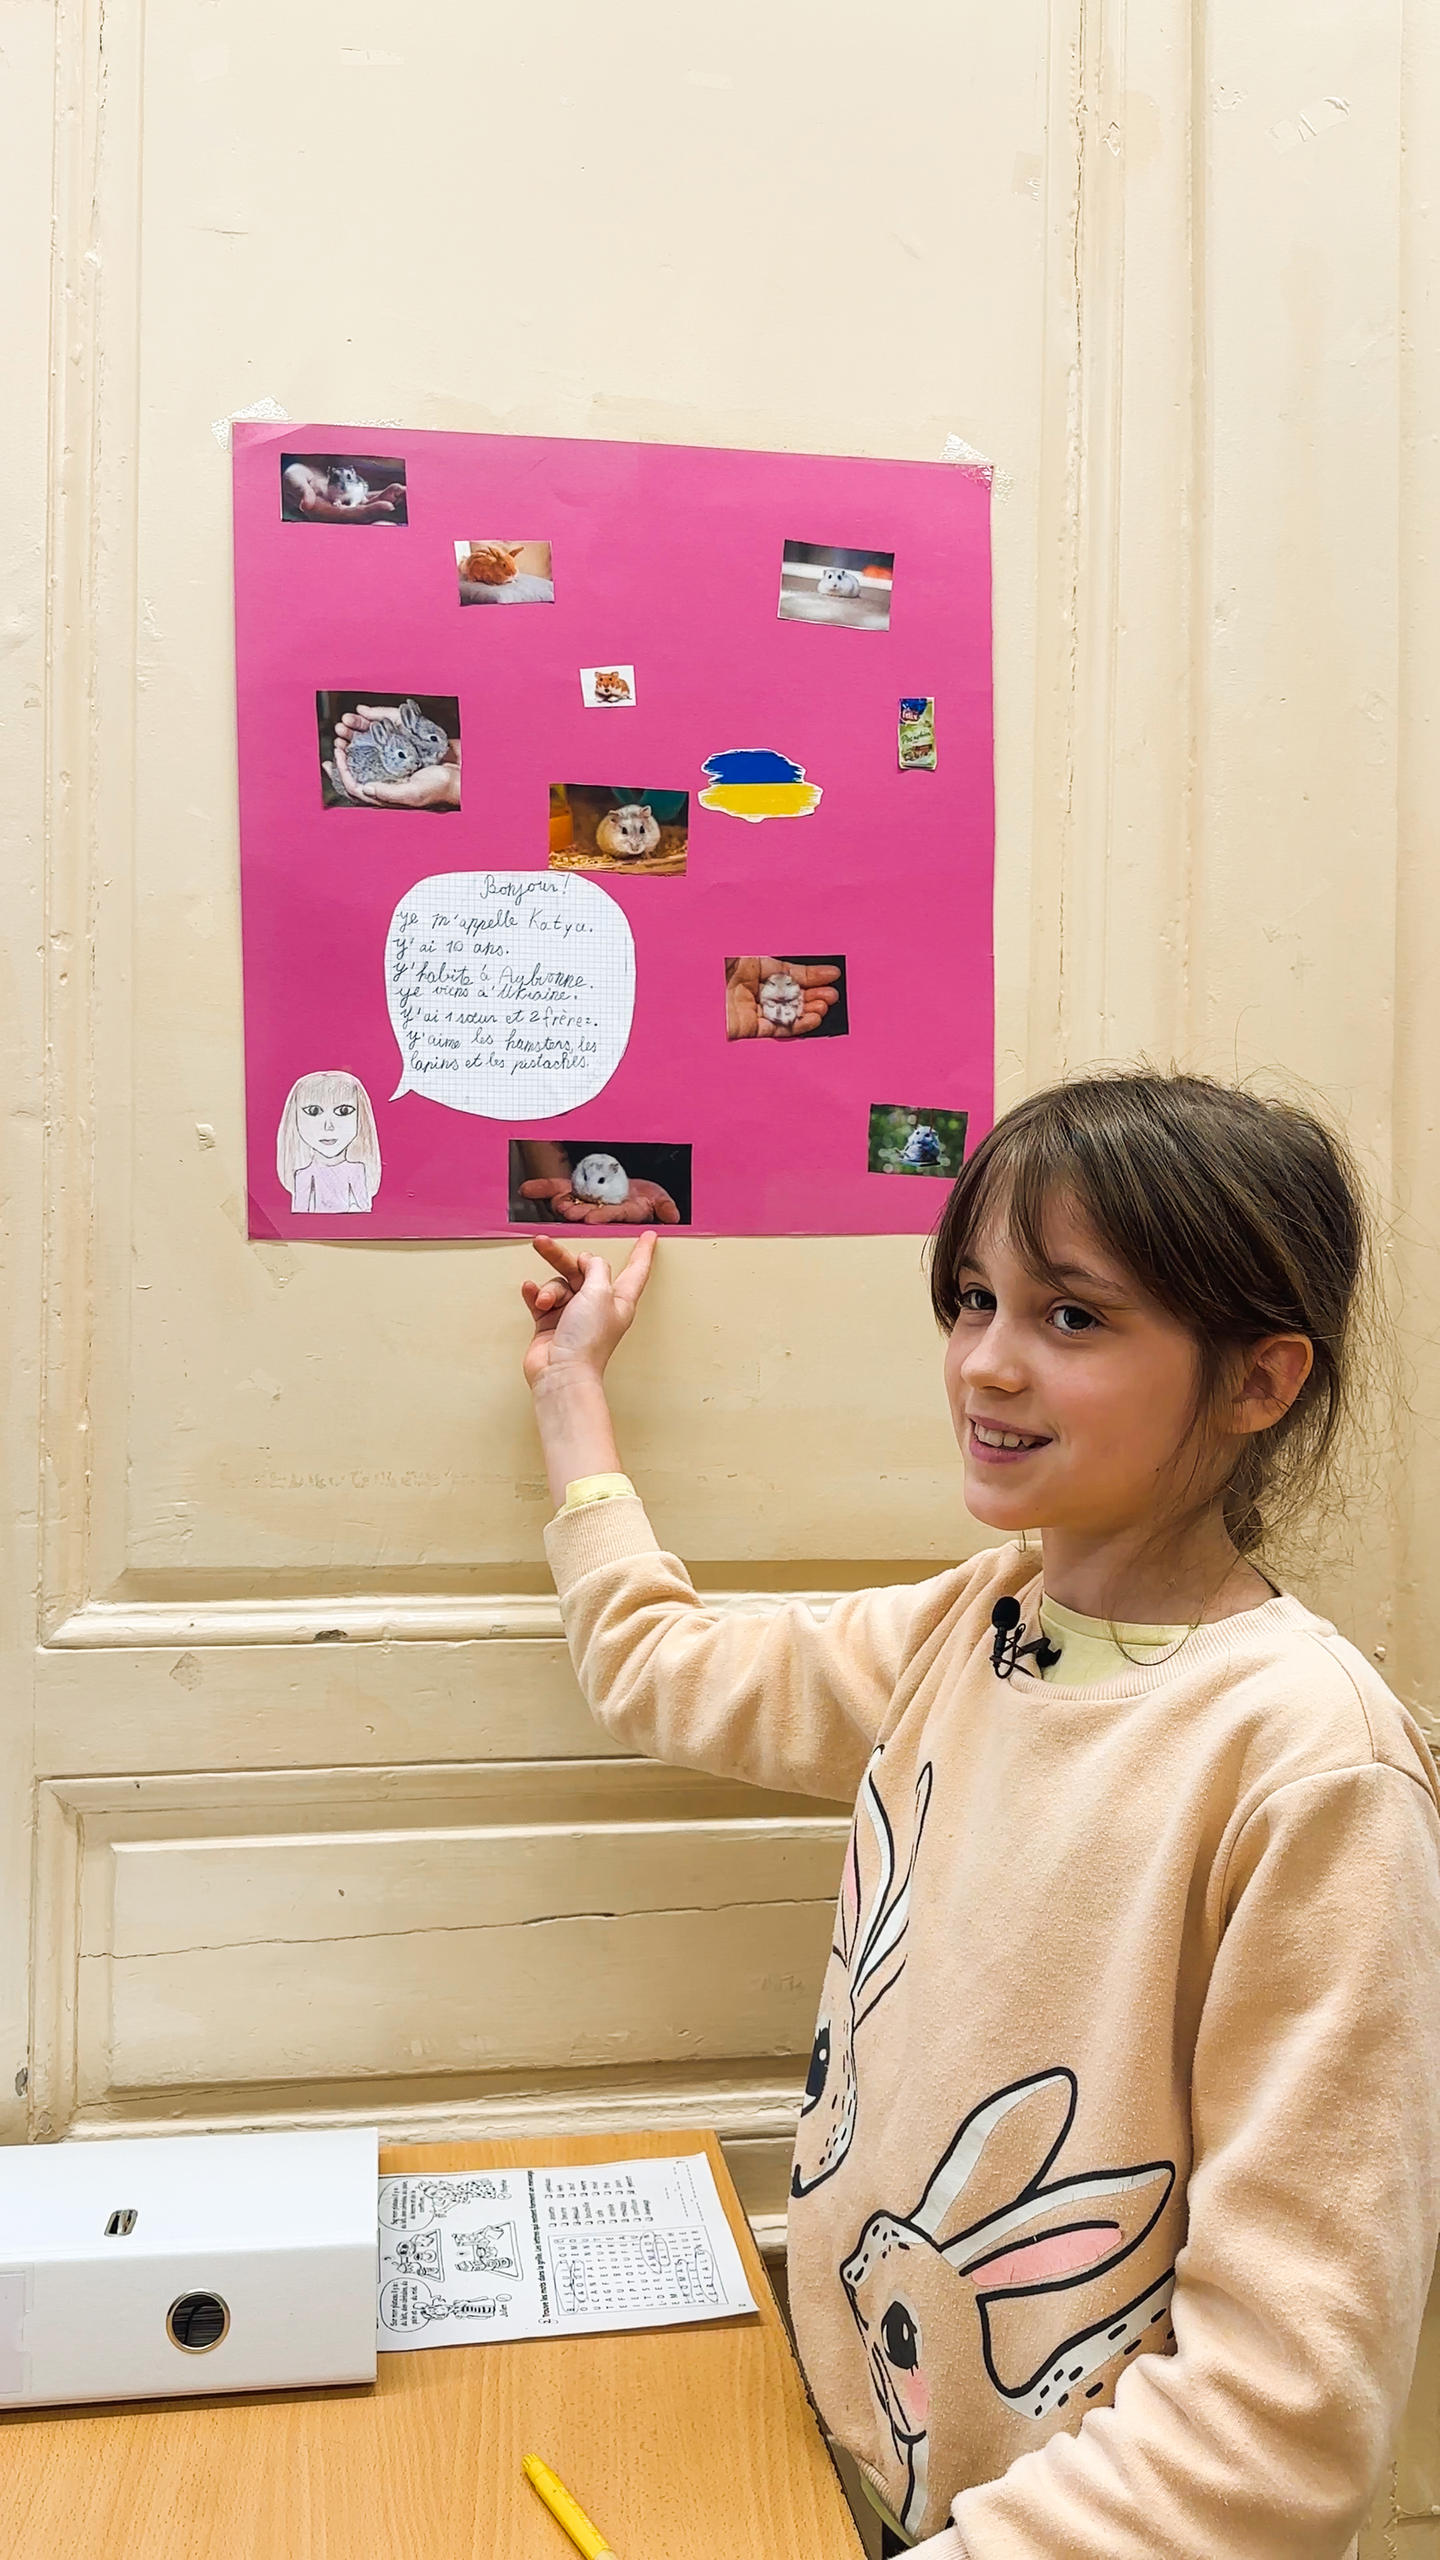 Ein Mädchen zeigt eine von ihr gestaltete Tafel mit Bildern von Hamstern, der ukrainischen Flagge und ihrer kurzen Beschreibung